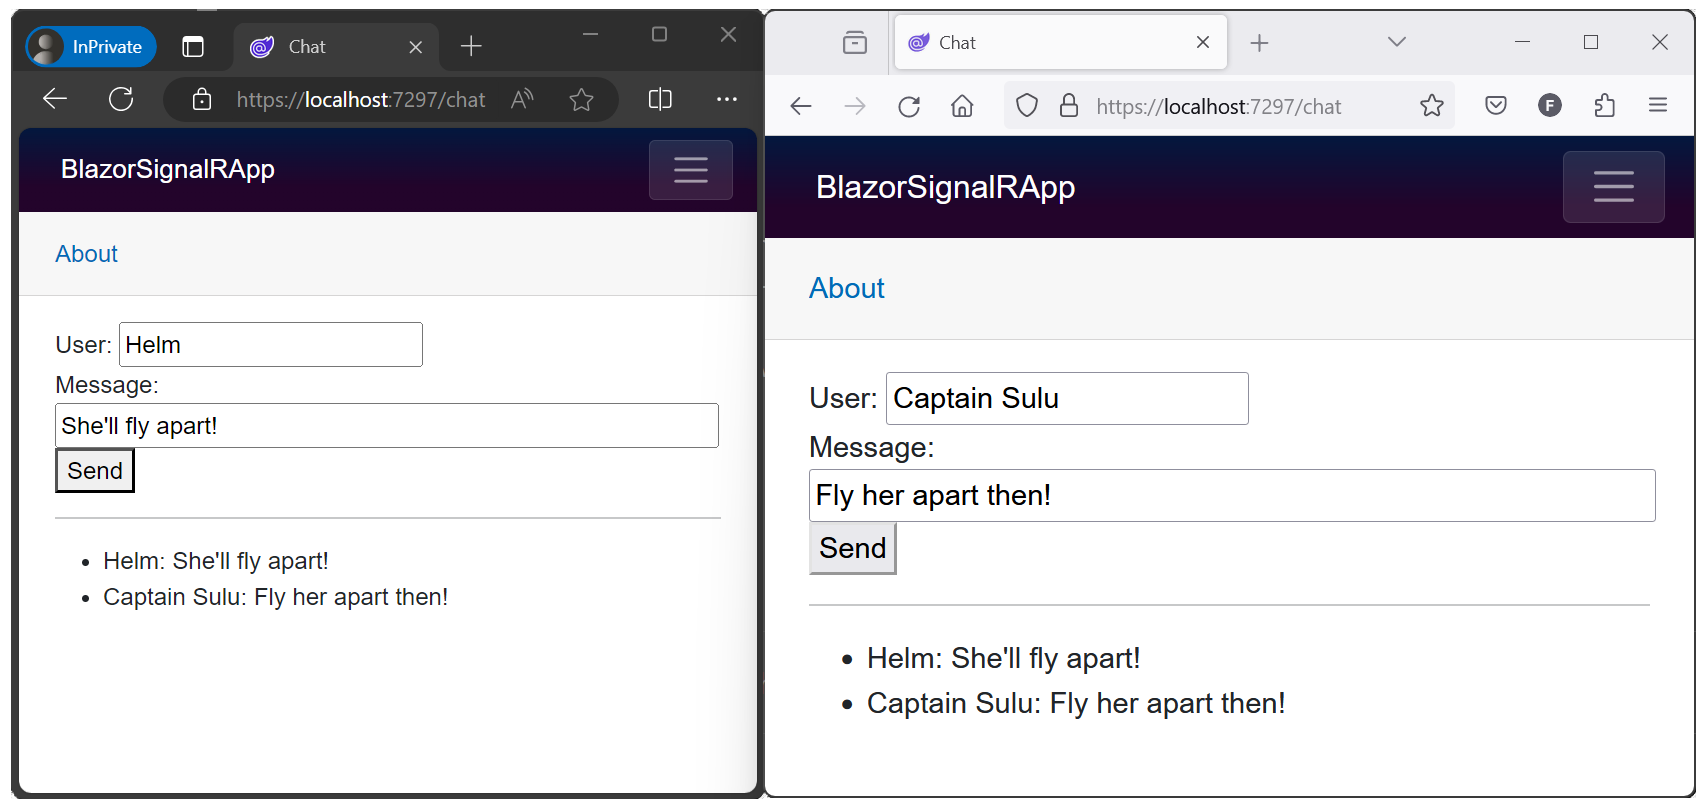 SignalRBlazor 샘플 앱은 교환된 메시지를 표시하는 두 개의 브라우저 창에서 열립니다.